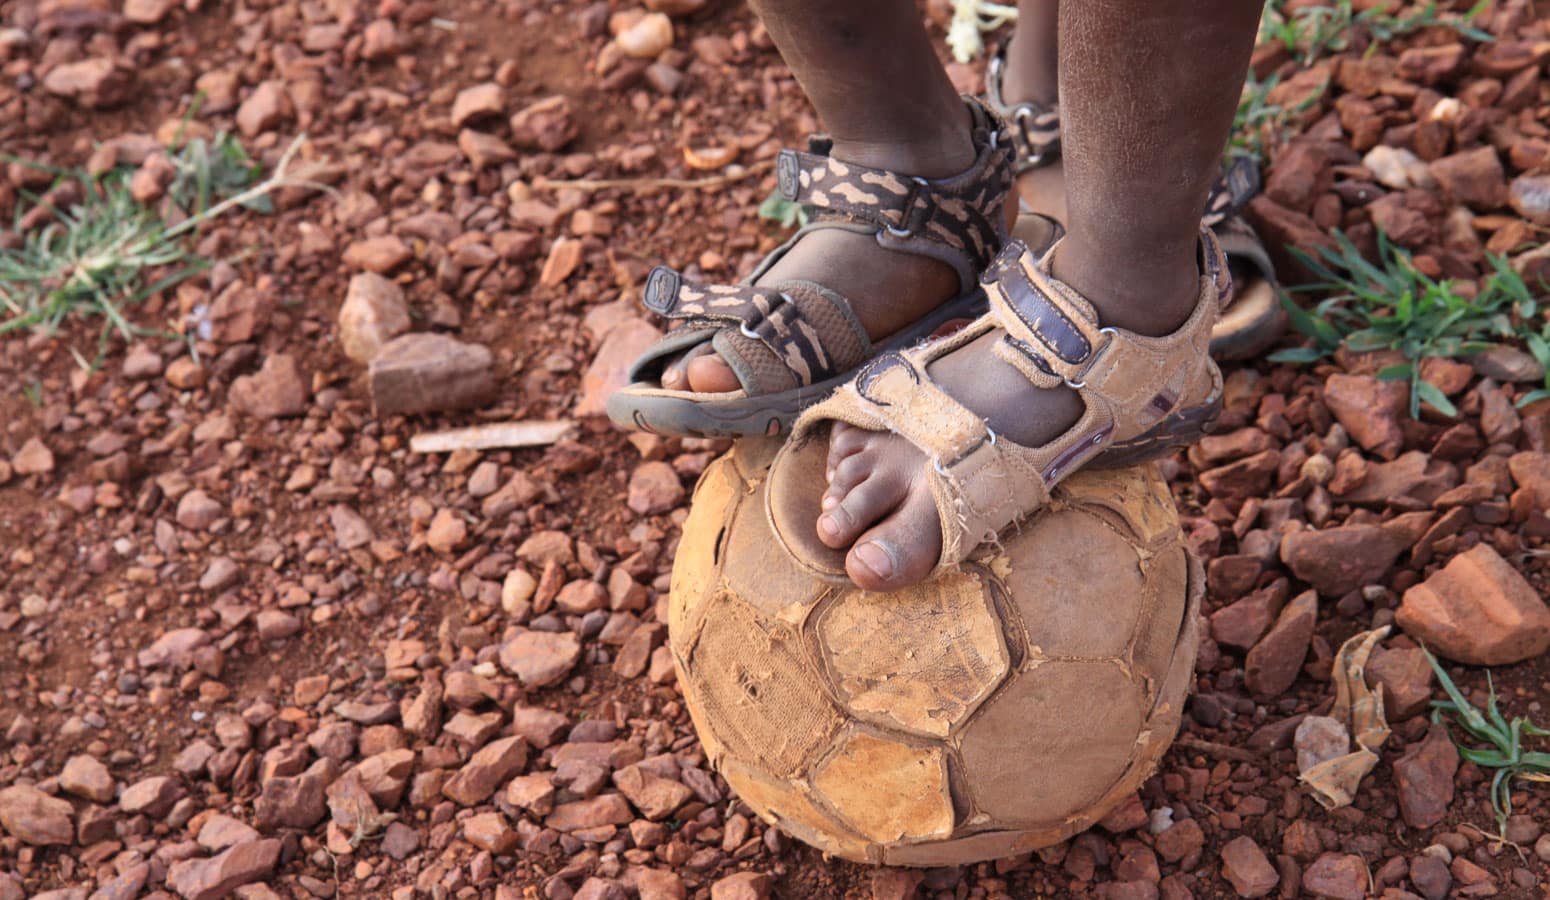 To føtter med slitte sandaler er plassert oppå en slitt fotball. Foto: Line Grove Hermansen